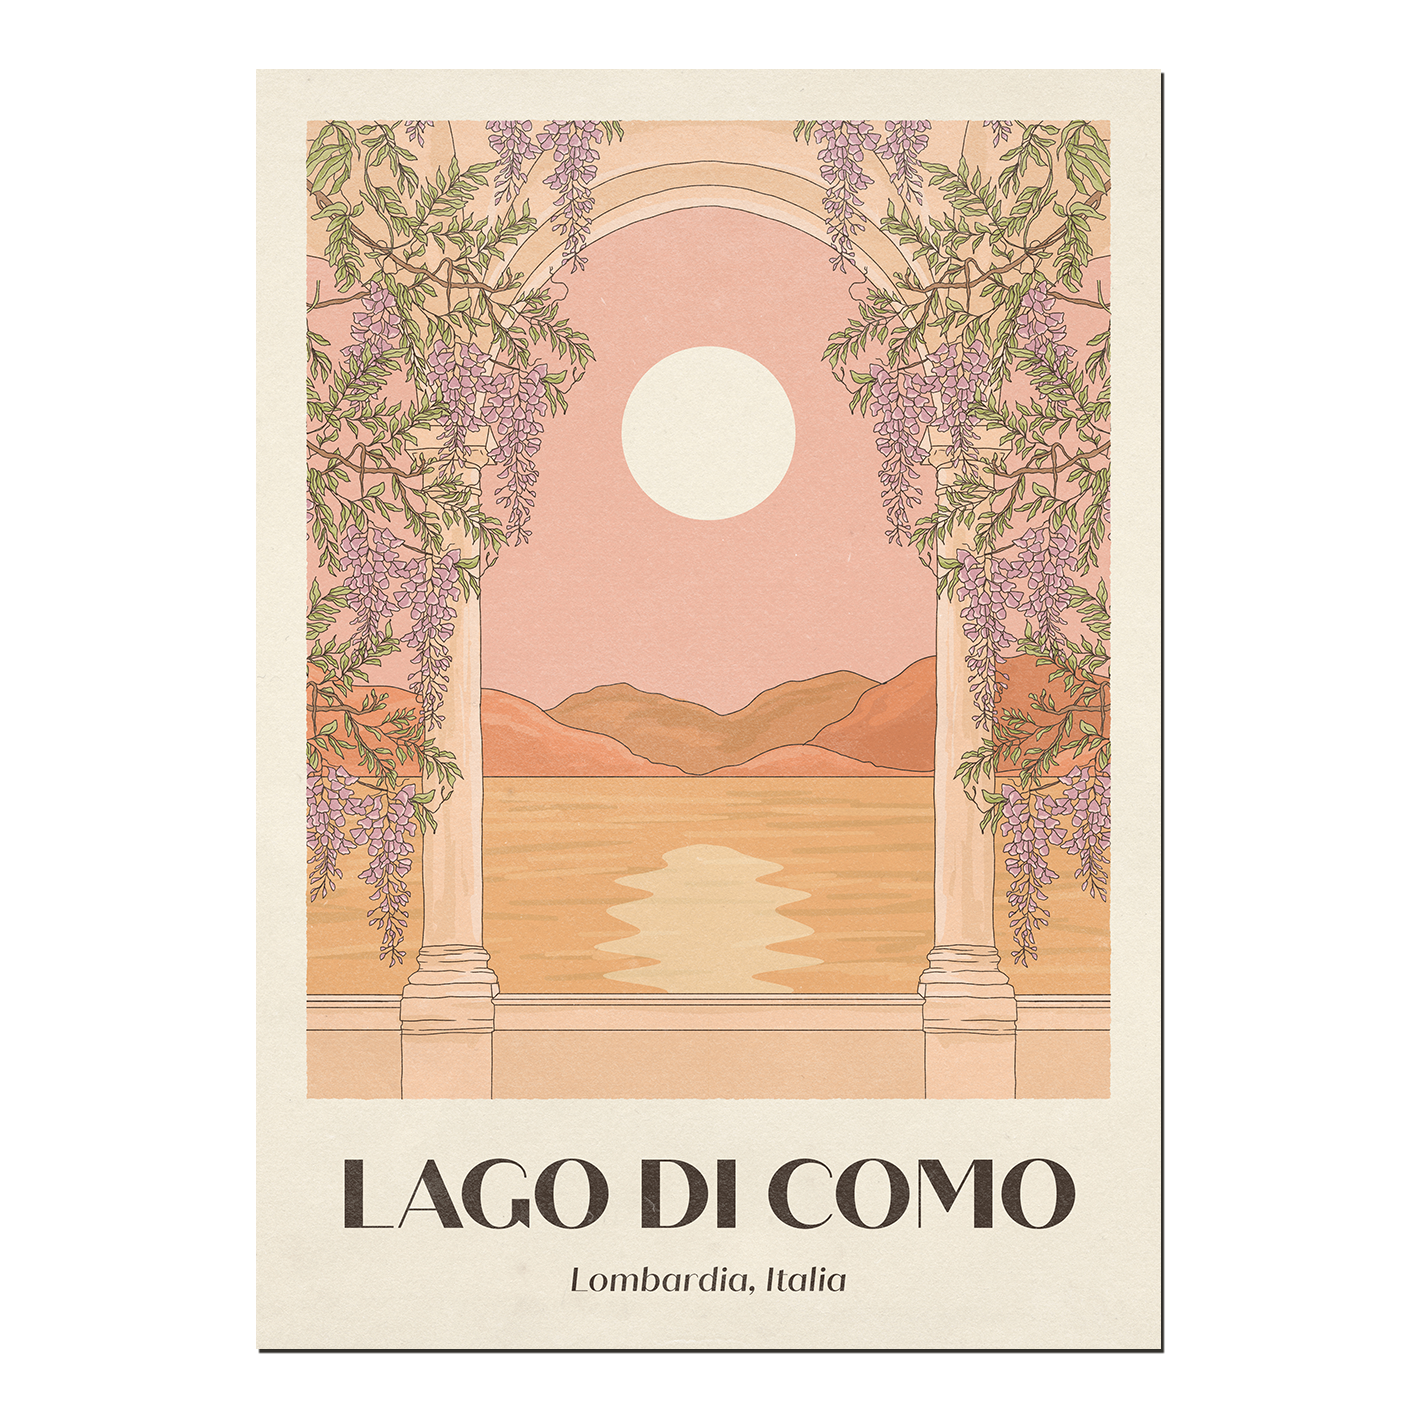 Lago di Como Print